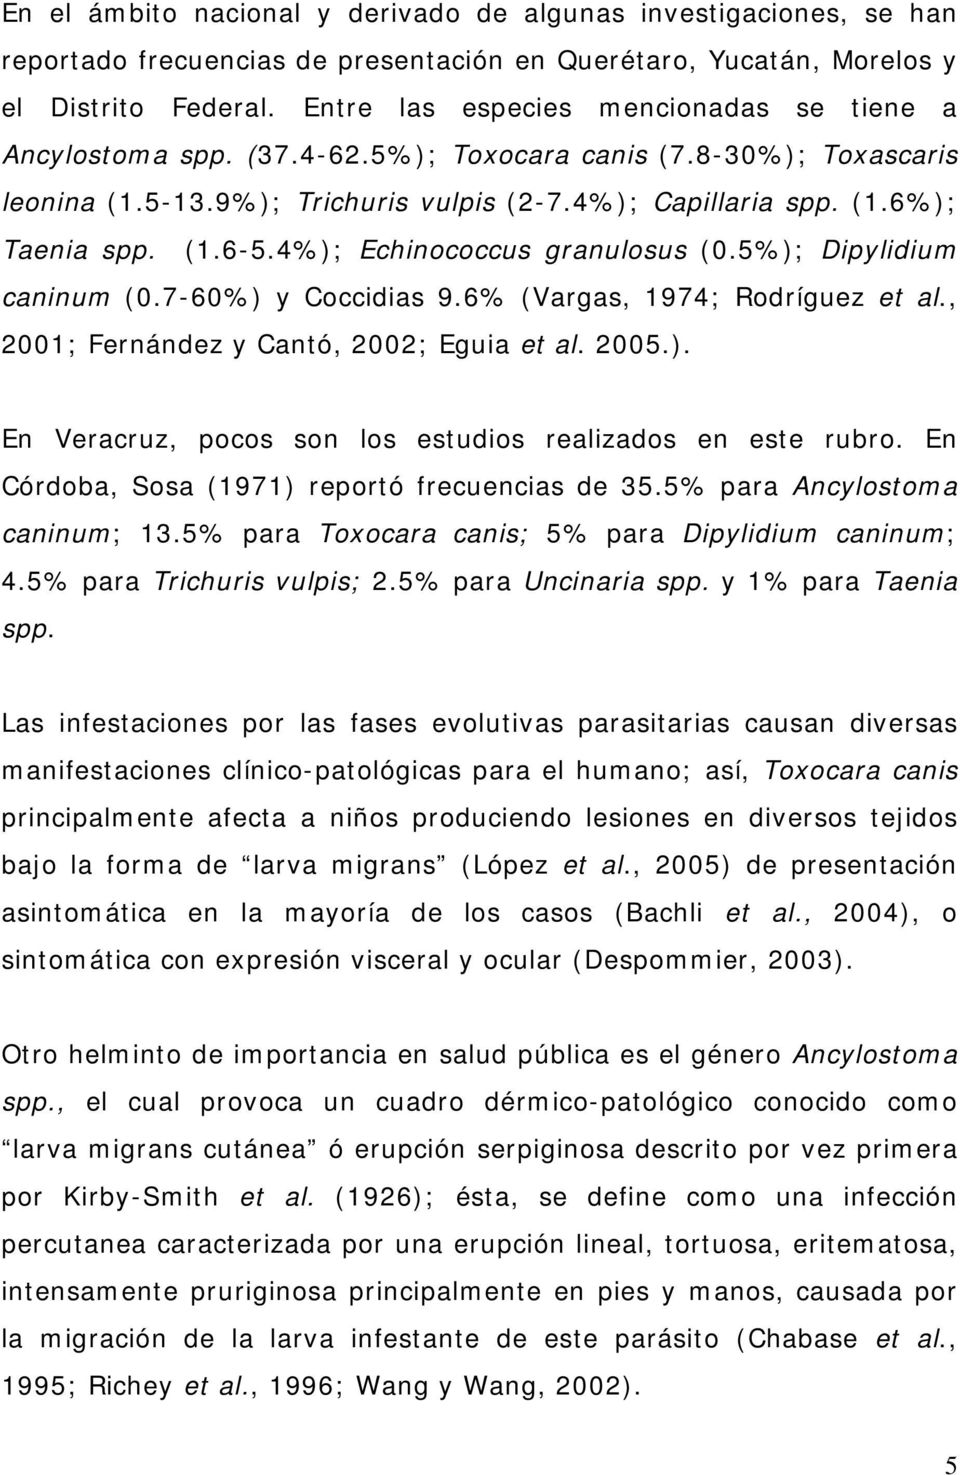 4%); Echinococcus granulosus (0.5%); Dipylidium caninum (0.7-60%) y Coccidias 9.6% (Vargas, 1974; Rodríguez et al., 2001; Fernández y Cantó, 2002; Eguia et al. 2005.). En Veracruz, pocos son los estudios realizados en este rubro.